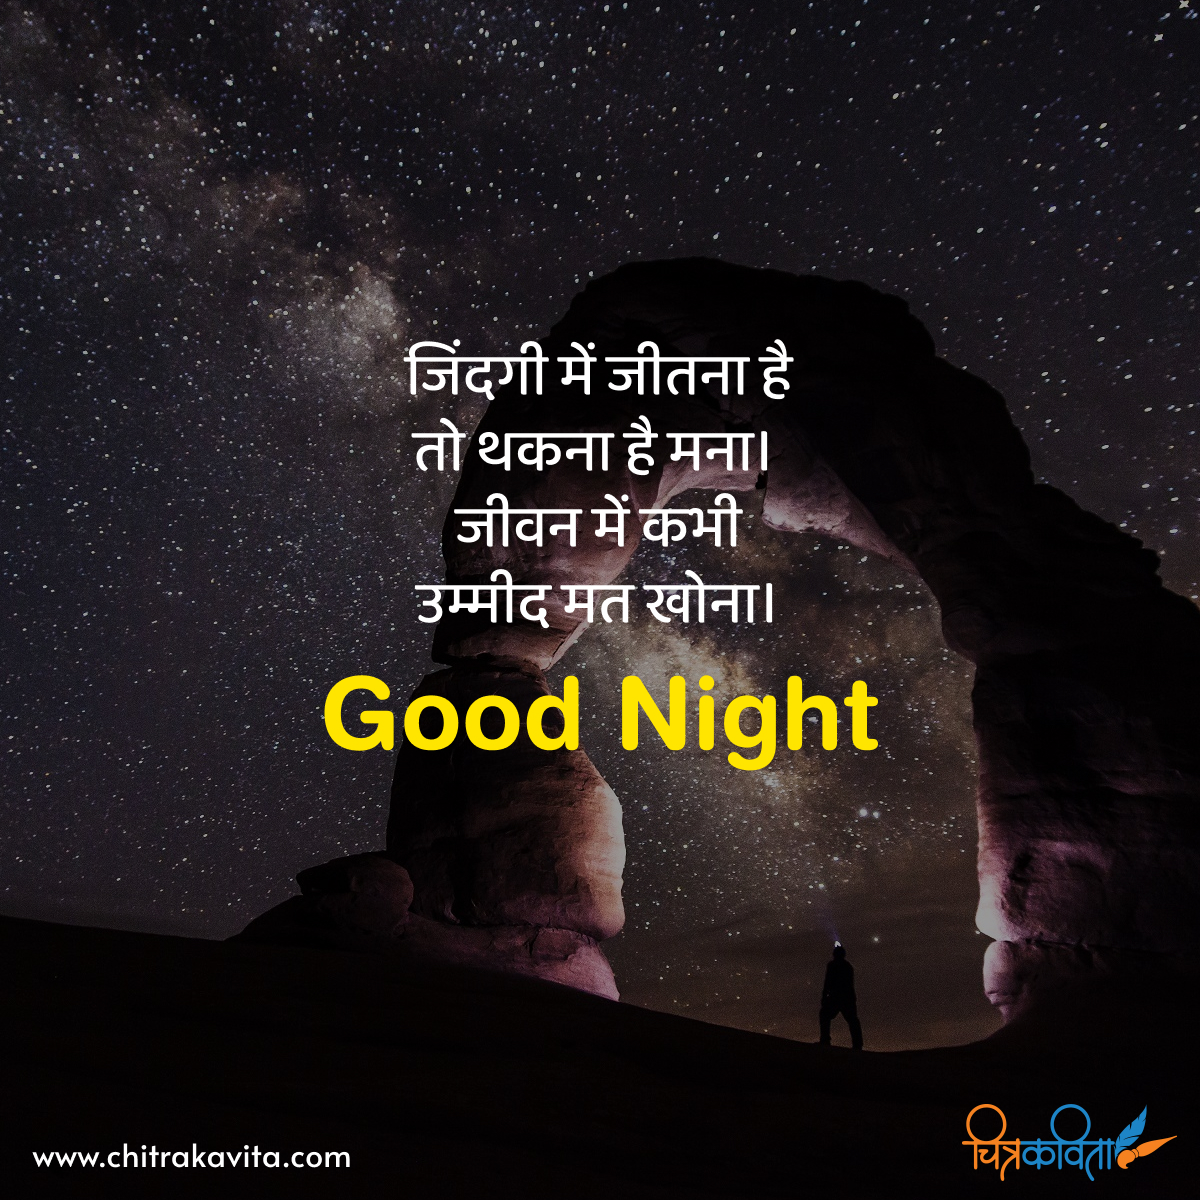 hindi good night quotes, good night quotes in hindi, dreams, inspirational, hindi status